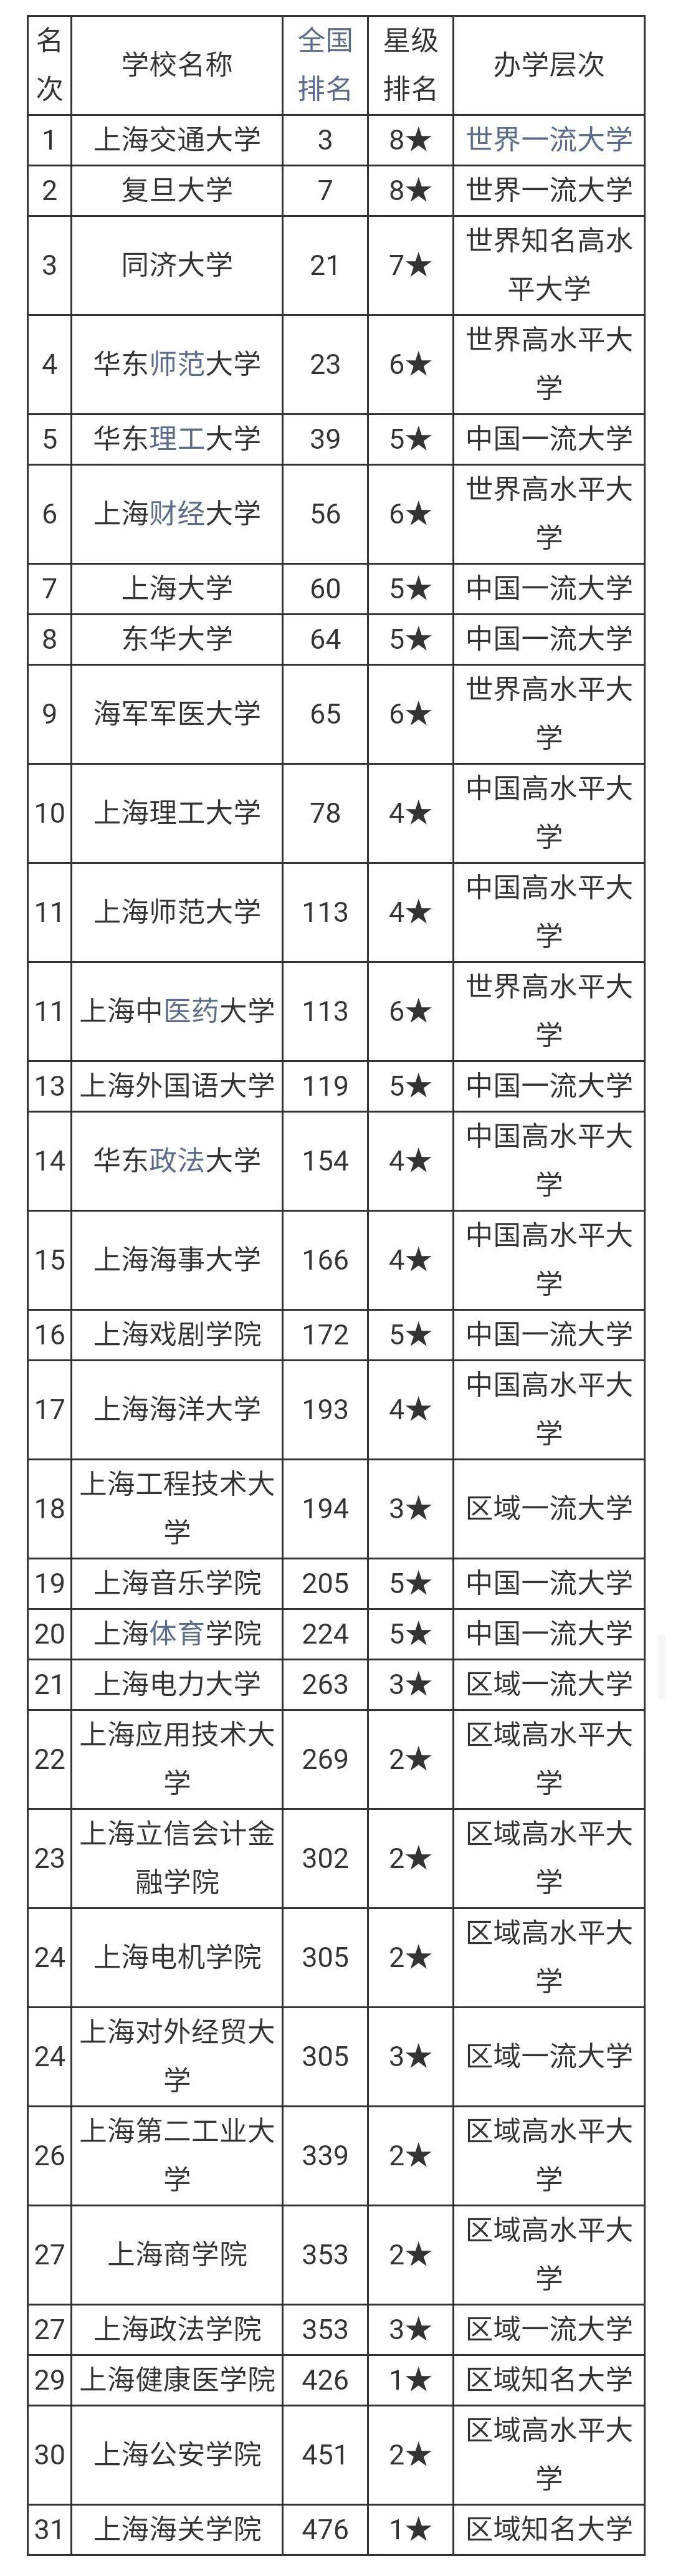 2021上海市各大学排名